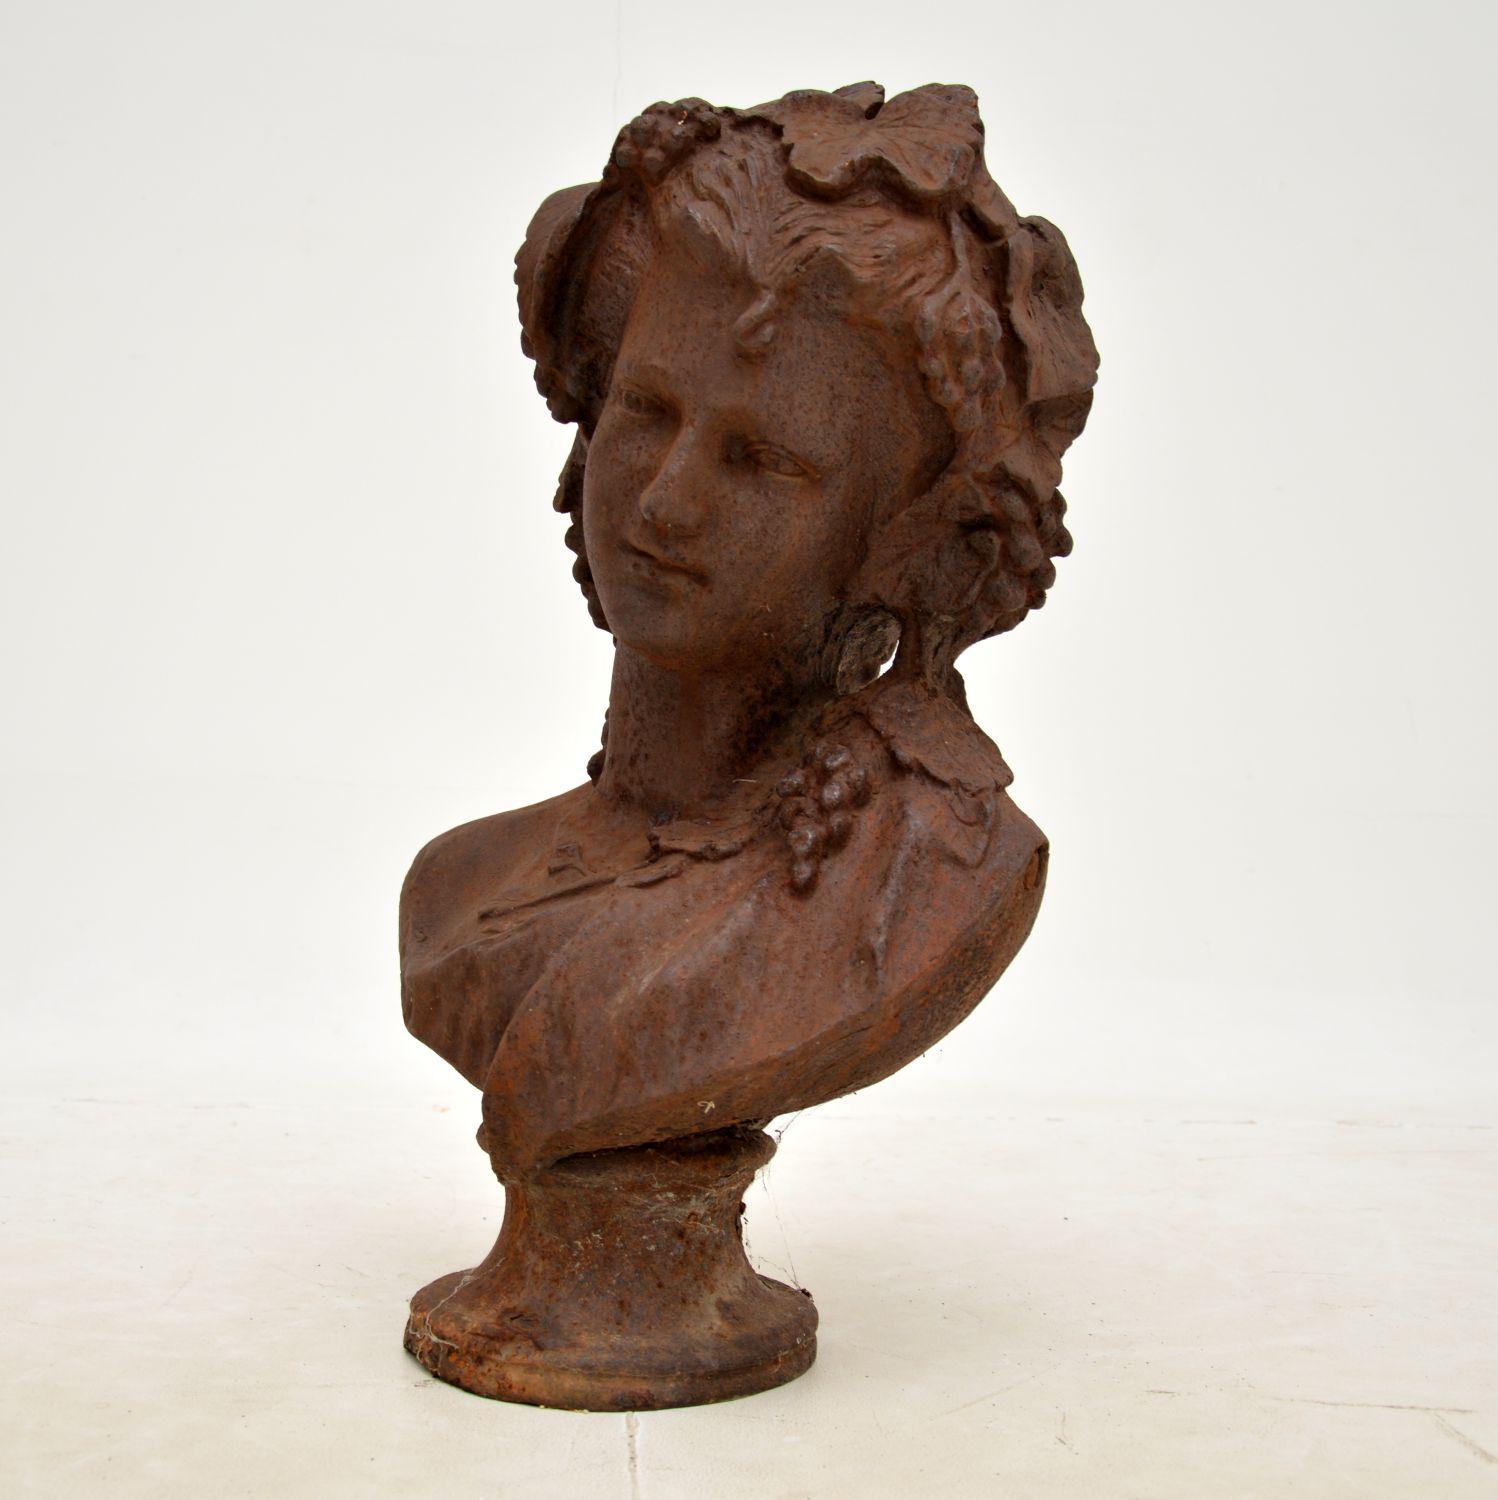 Un charmant et magnifique buste antique en fonte représentant une jeune femme avec des raisins dans les cheveux. Il a été fabriqué en Angleterre, il est difficile de le dater exactement mais nous dirions qu'il date d'environ 1900-1910.

Il est d'une